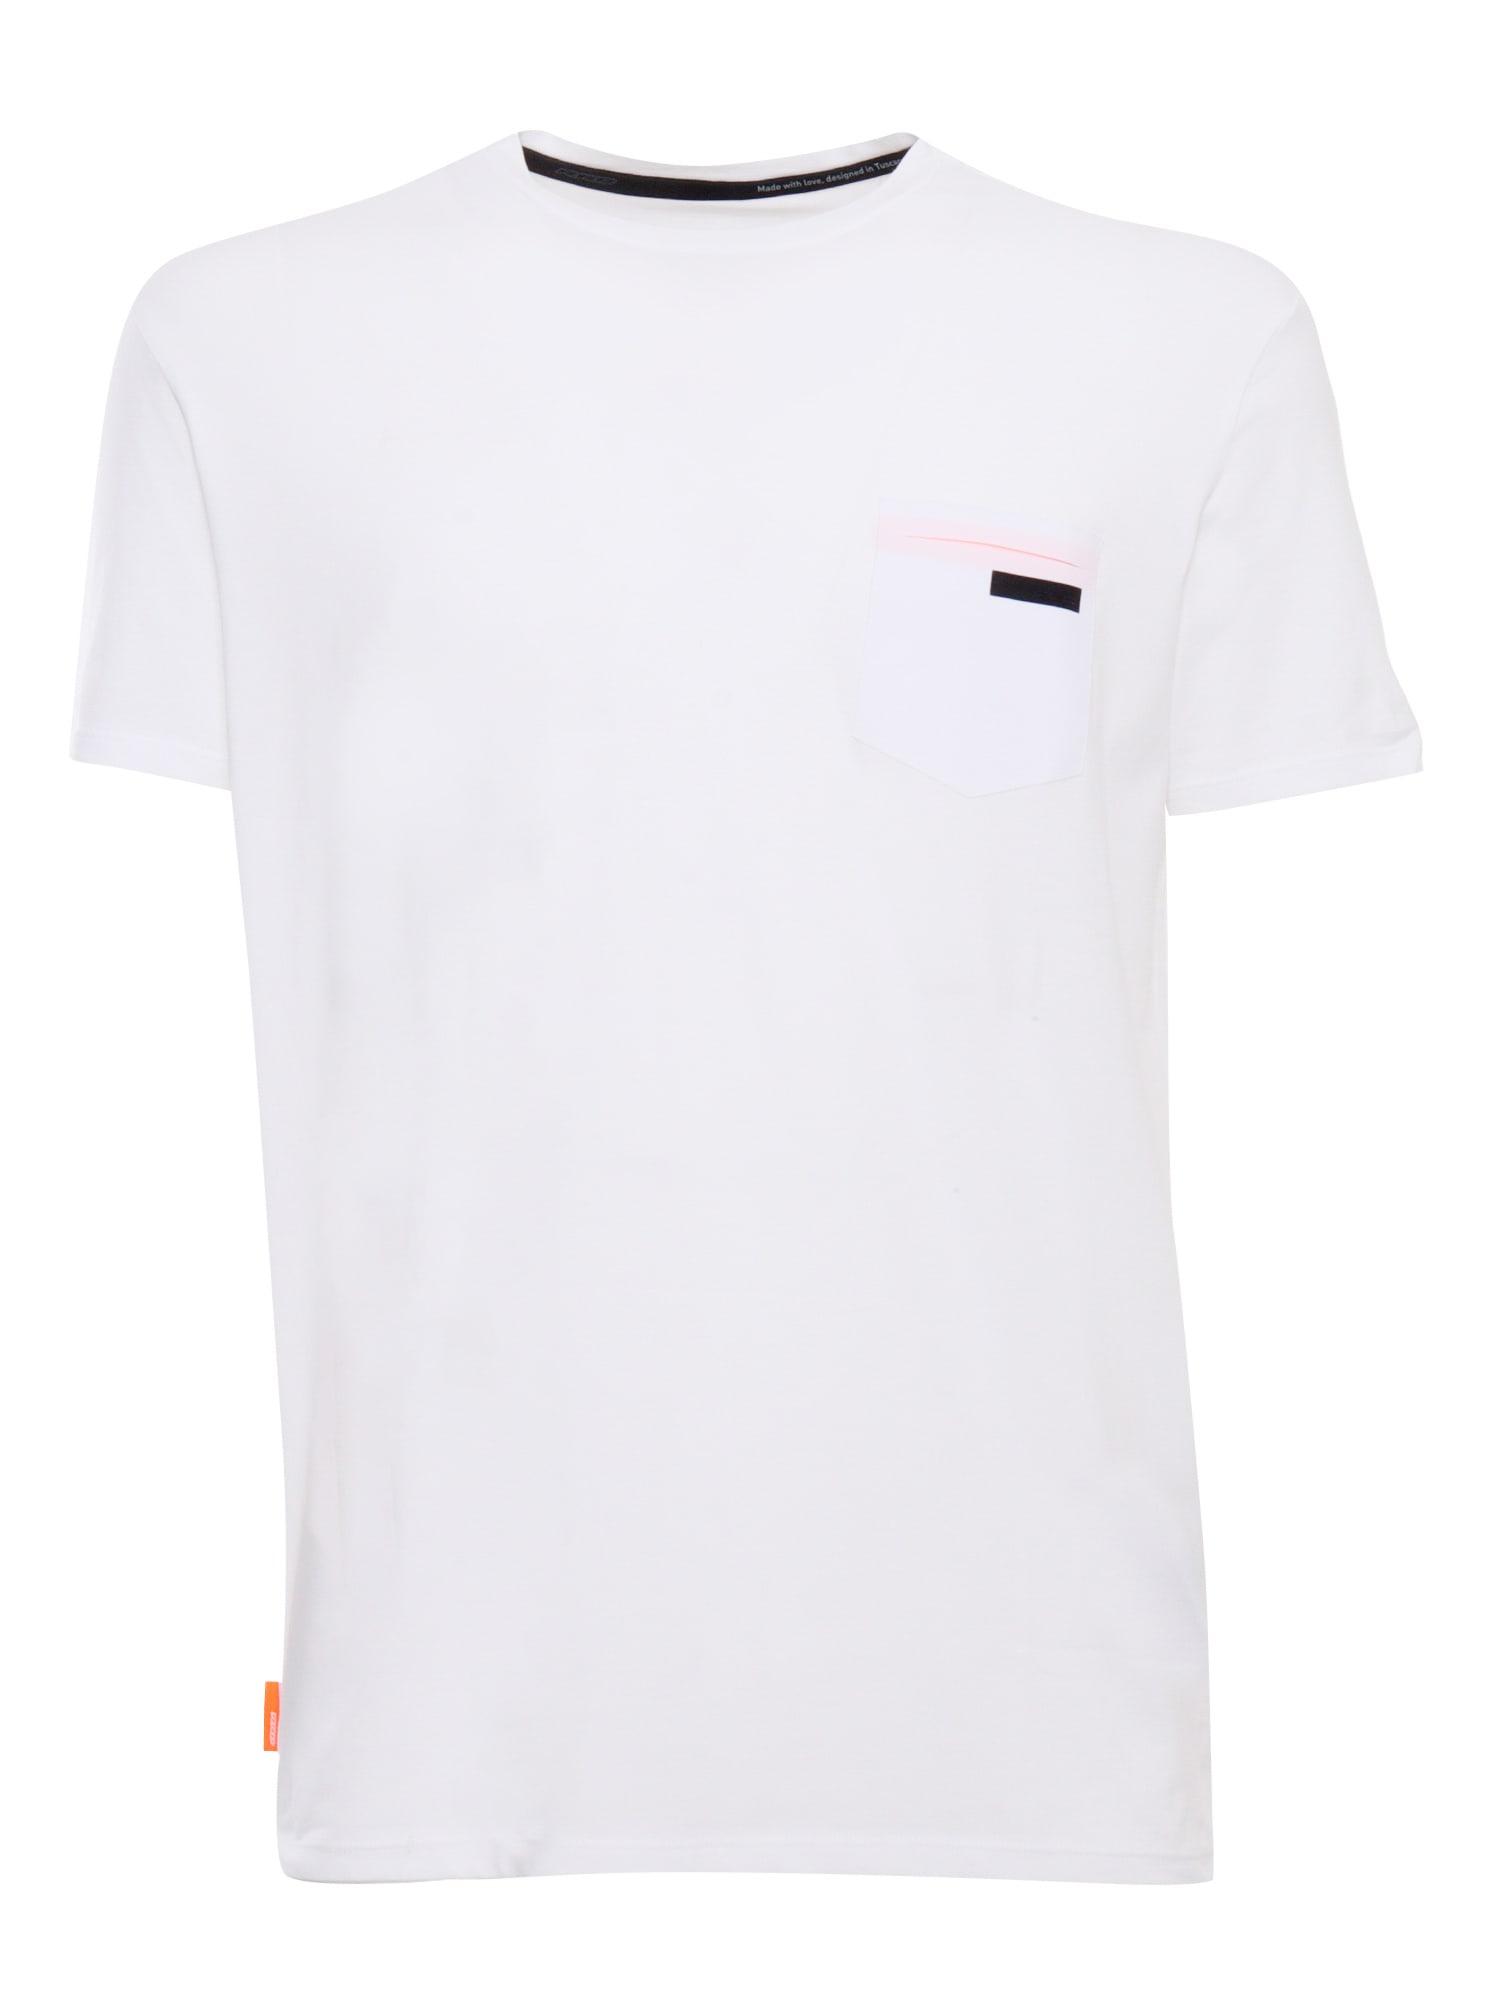 Rrd - Roberto Ricci Design Revo White T-shirt